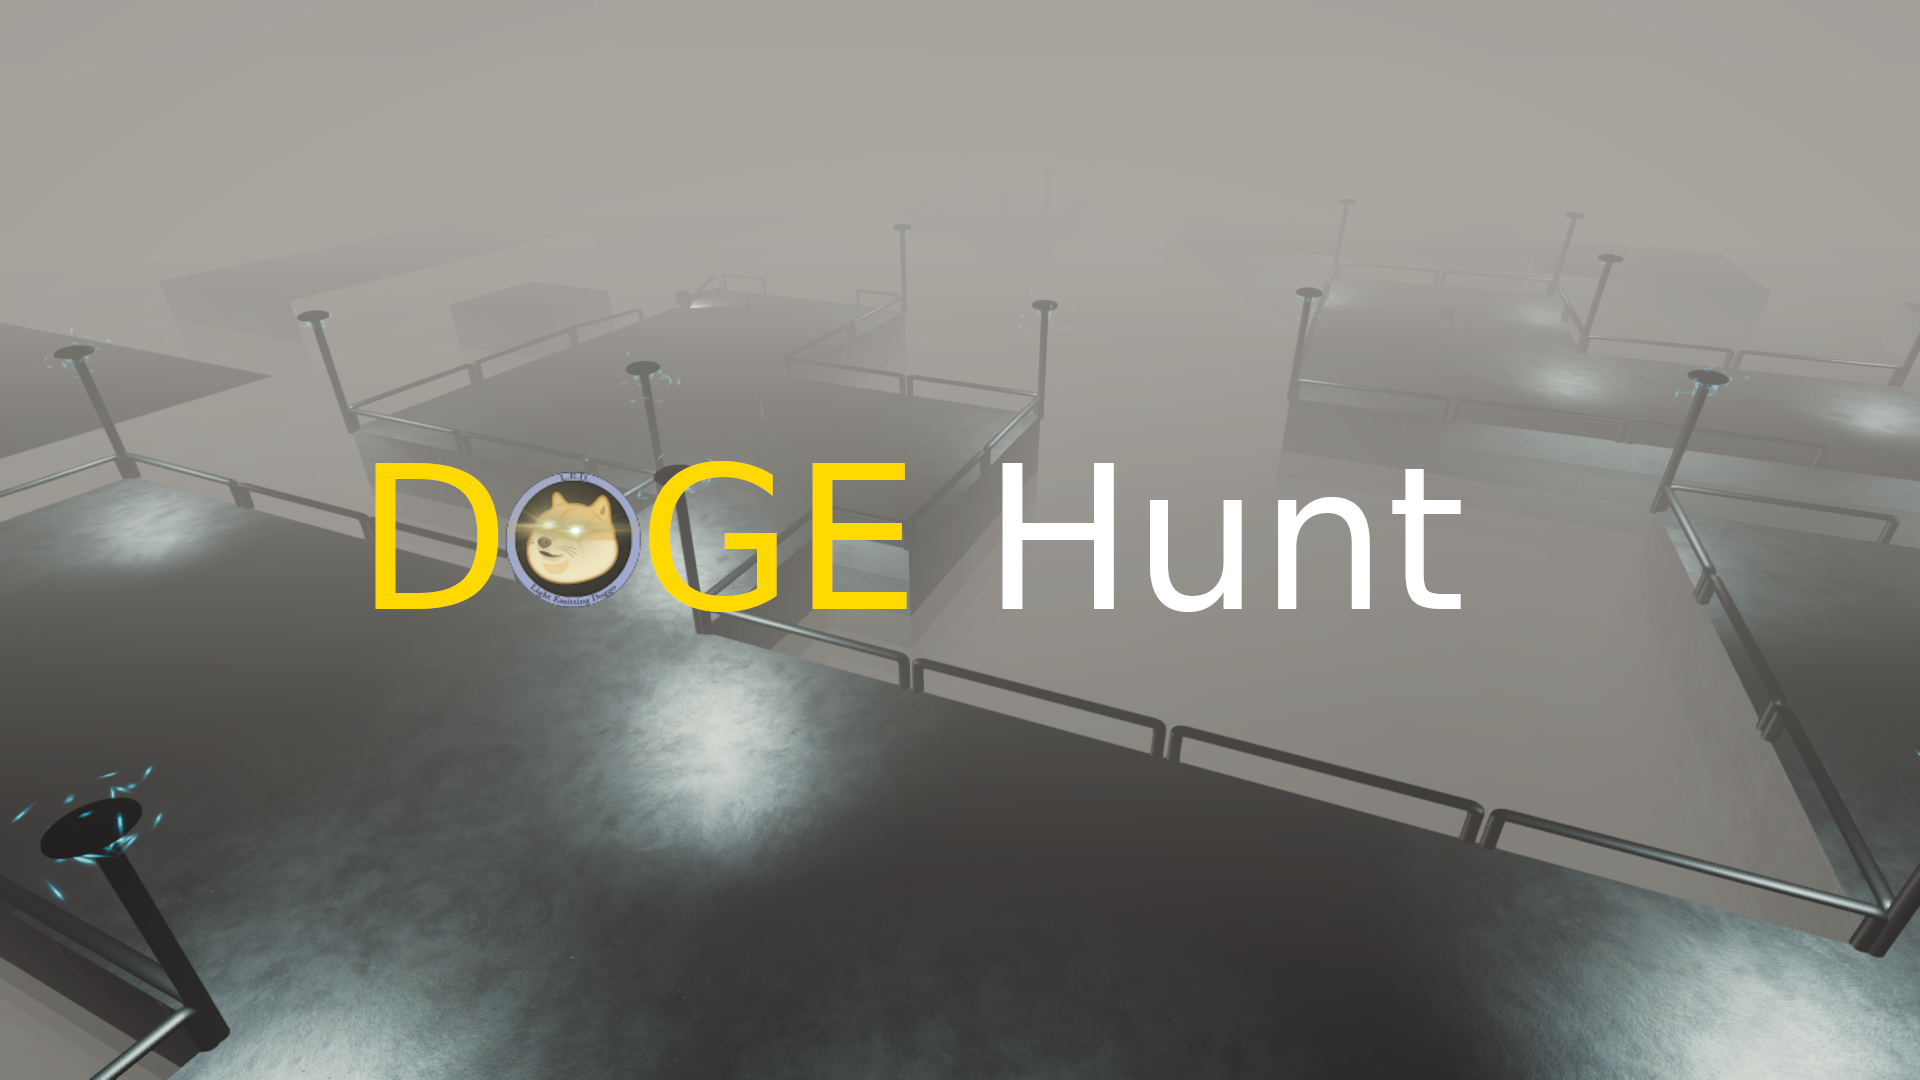 DOGE Hunt